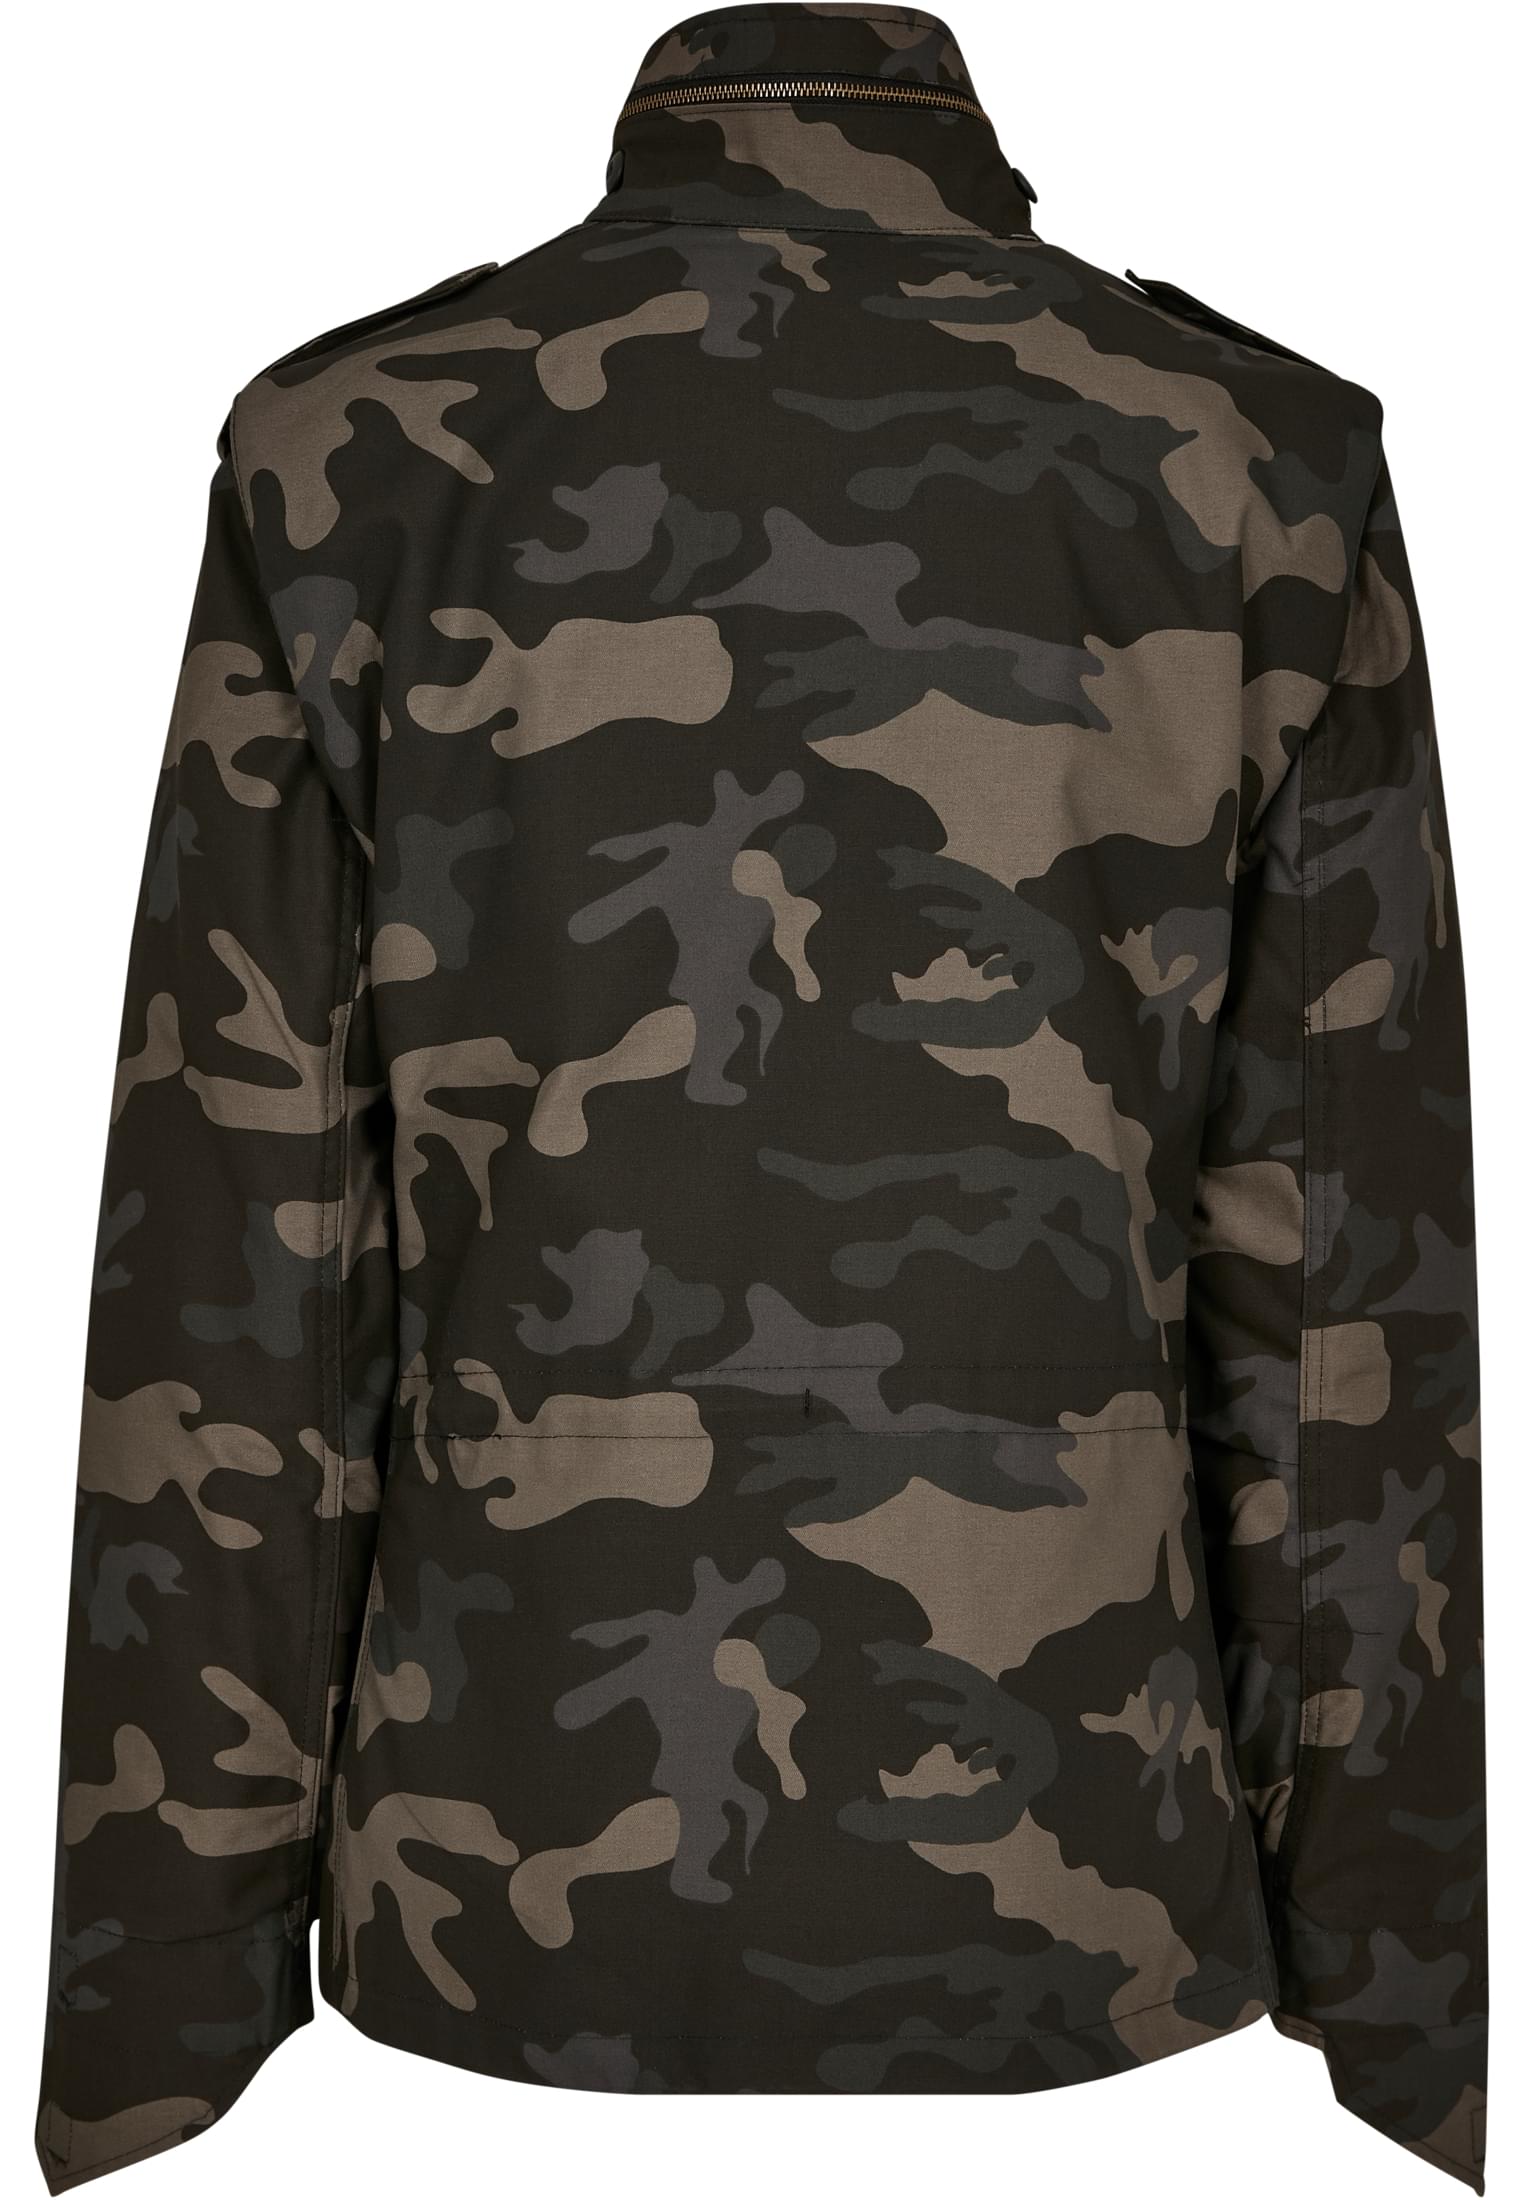 Jacken M-65 Field Jacket in Farbe darkcamo